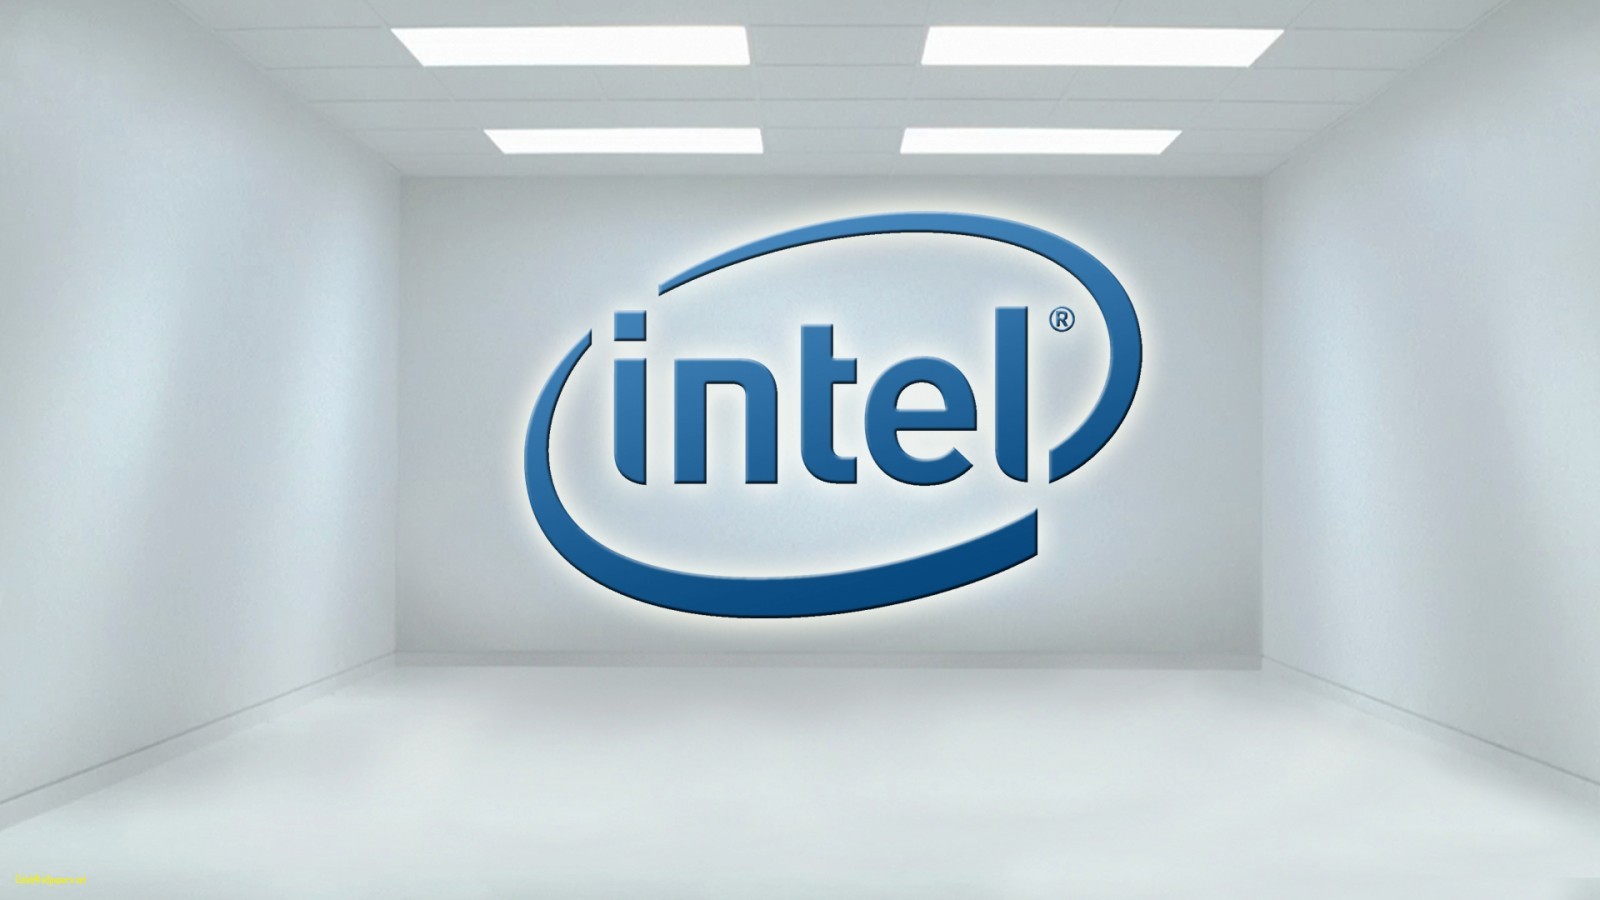 Intel Core i9-9990XE – procesor za 13 tysięcy złotych